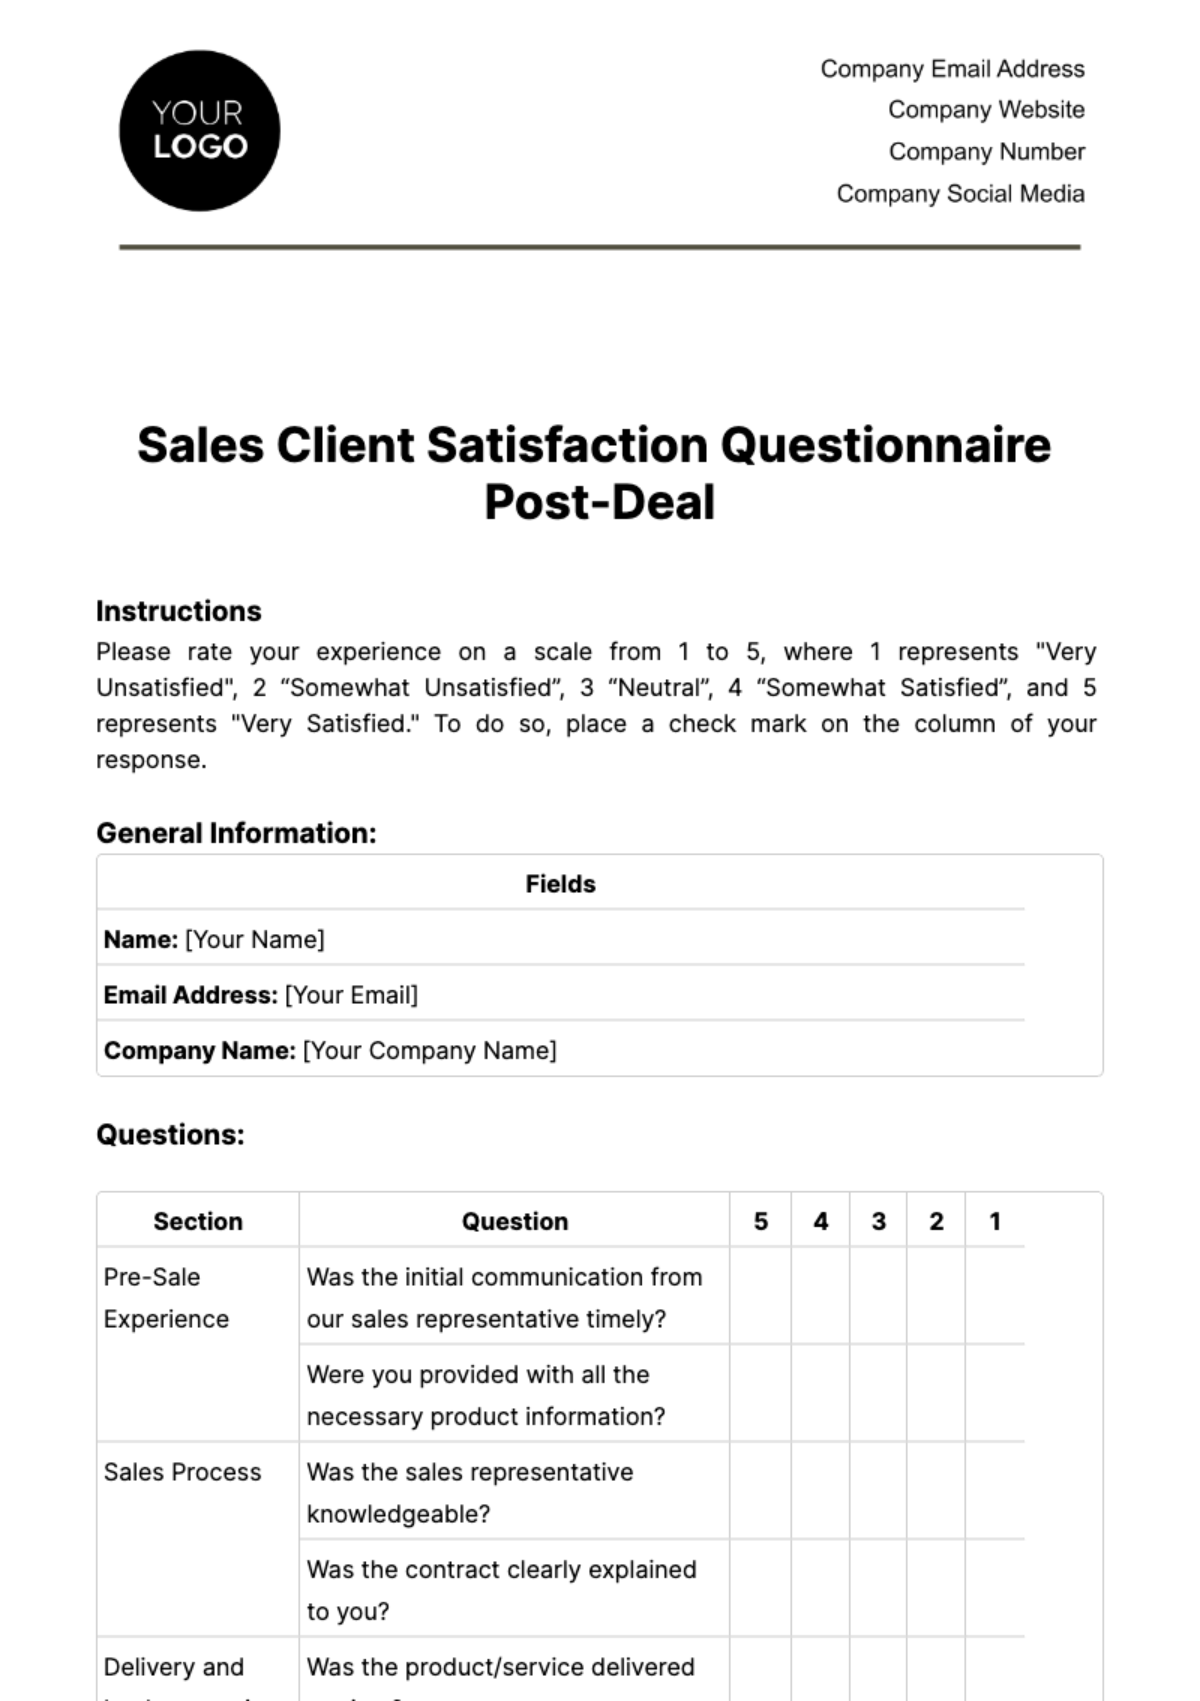 Sales Client Satisfaction Questionnaire Post-Deal Template